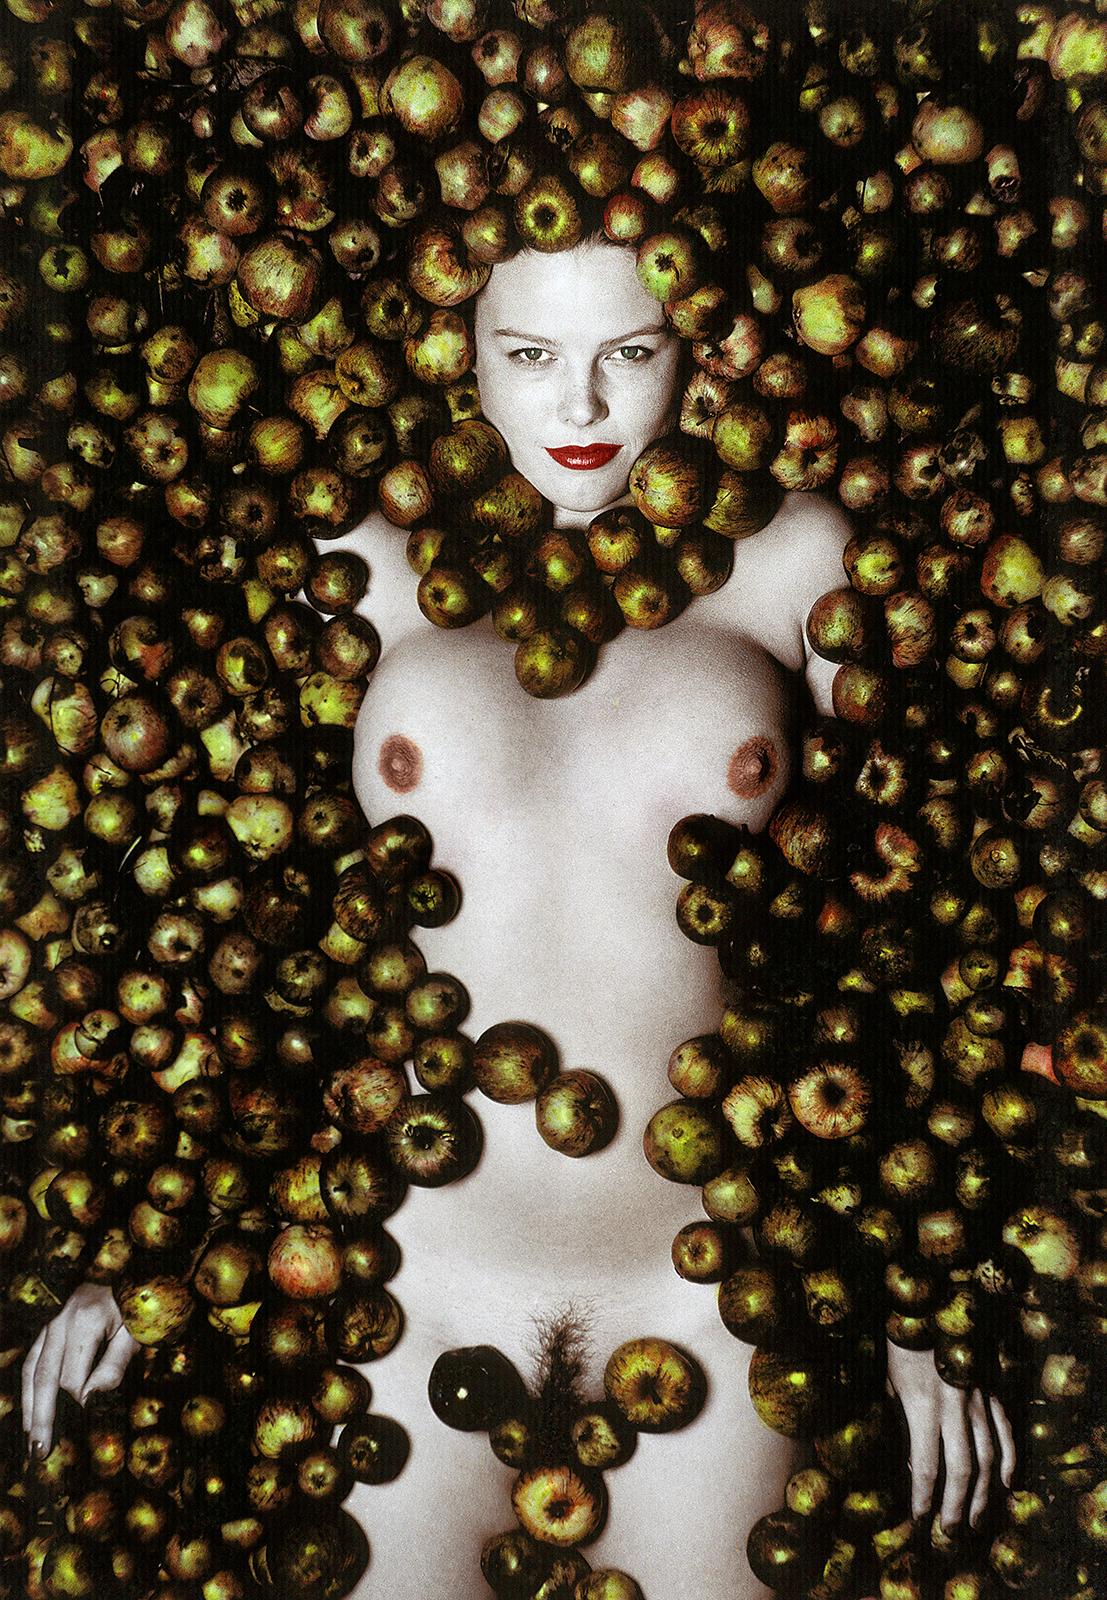 Ian Sanderson Color Photograph – Signierter Kunstdruck in limitierter Auflage, Porträt wie ein Stillleben, Apfel